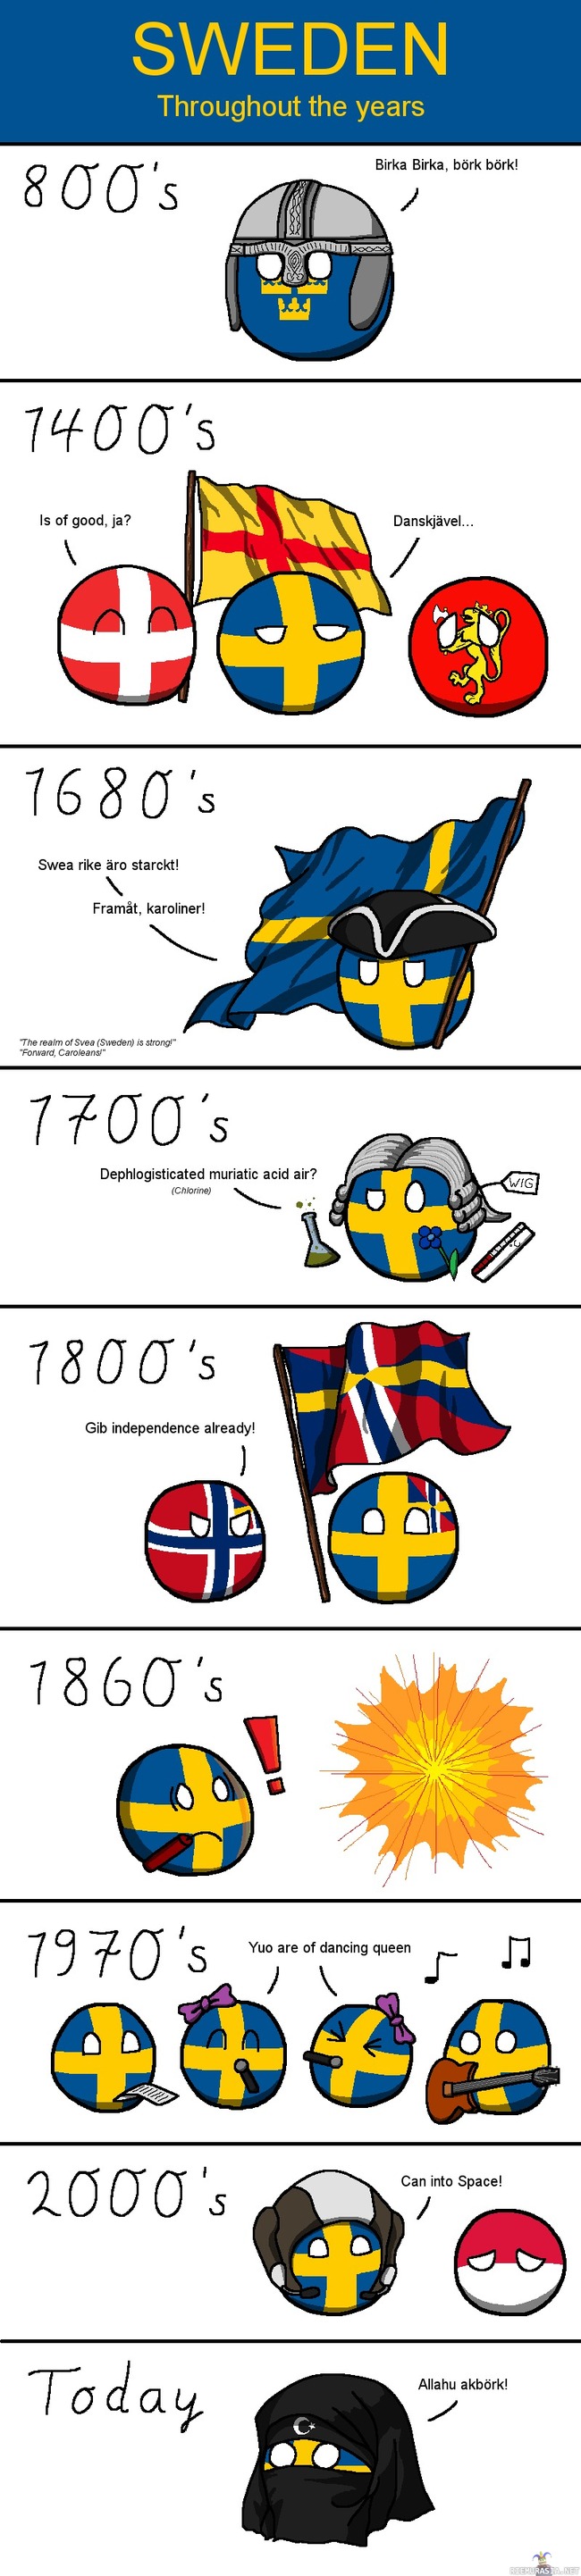 Ruotsin historia tiivistettynä. - Näihä se on suurinpiirtein mennyt.